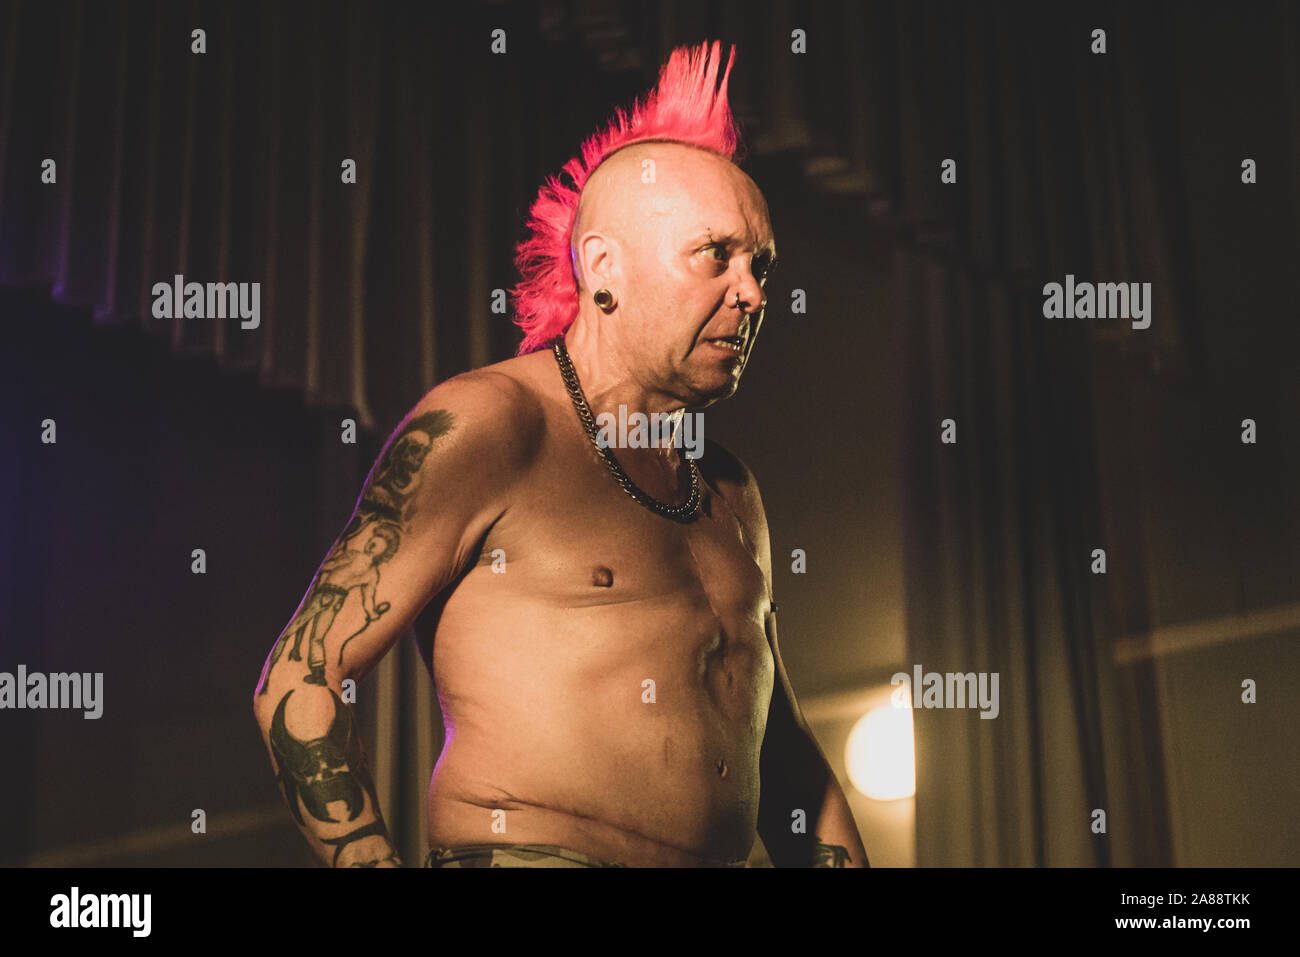 SPAZIO POLIVALENTE, CARAMAGNA PIEMONT, ITALIEN - 2019/11/06: Der schottische Punk Rock Sänger Walter'Wattie Buchan', Frontmann der "ausgenutzt" Band, die live auf der Bühne Stockfoto